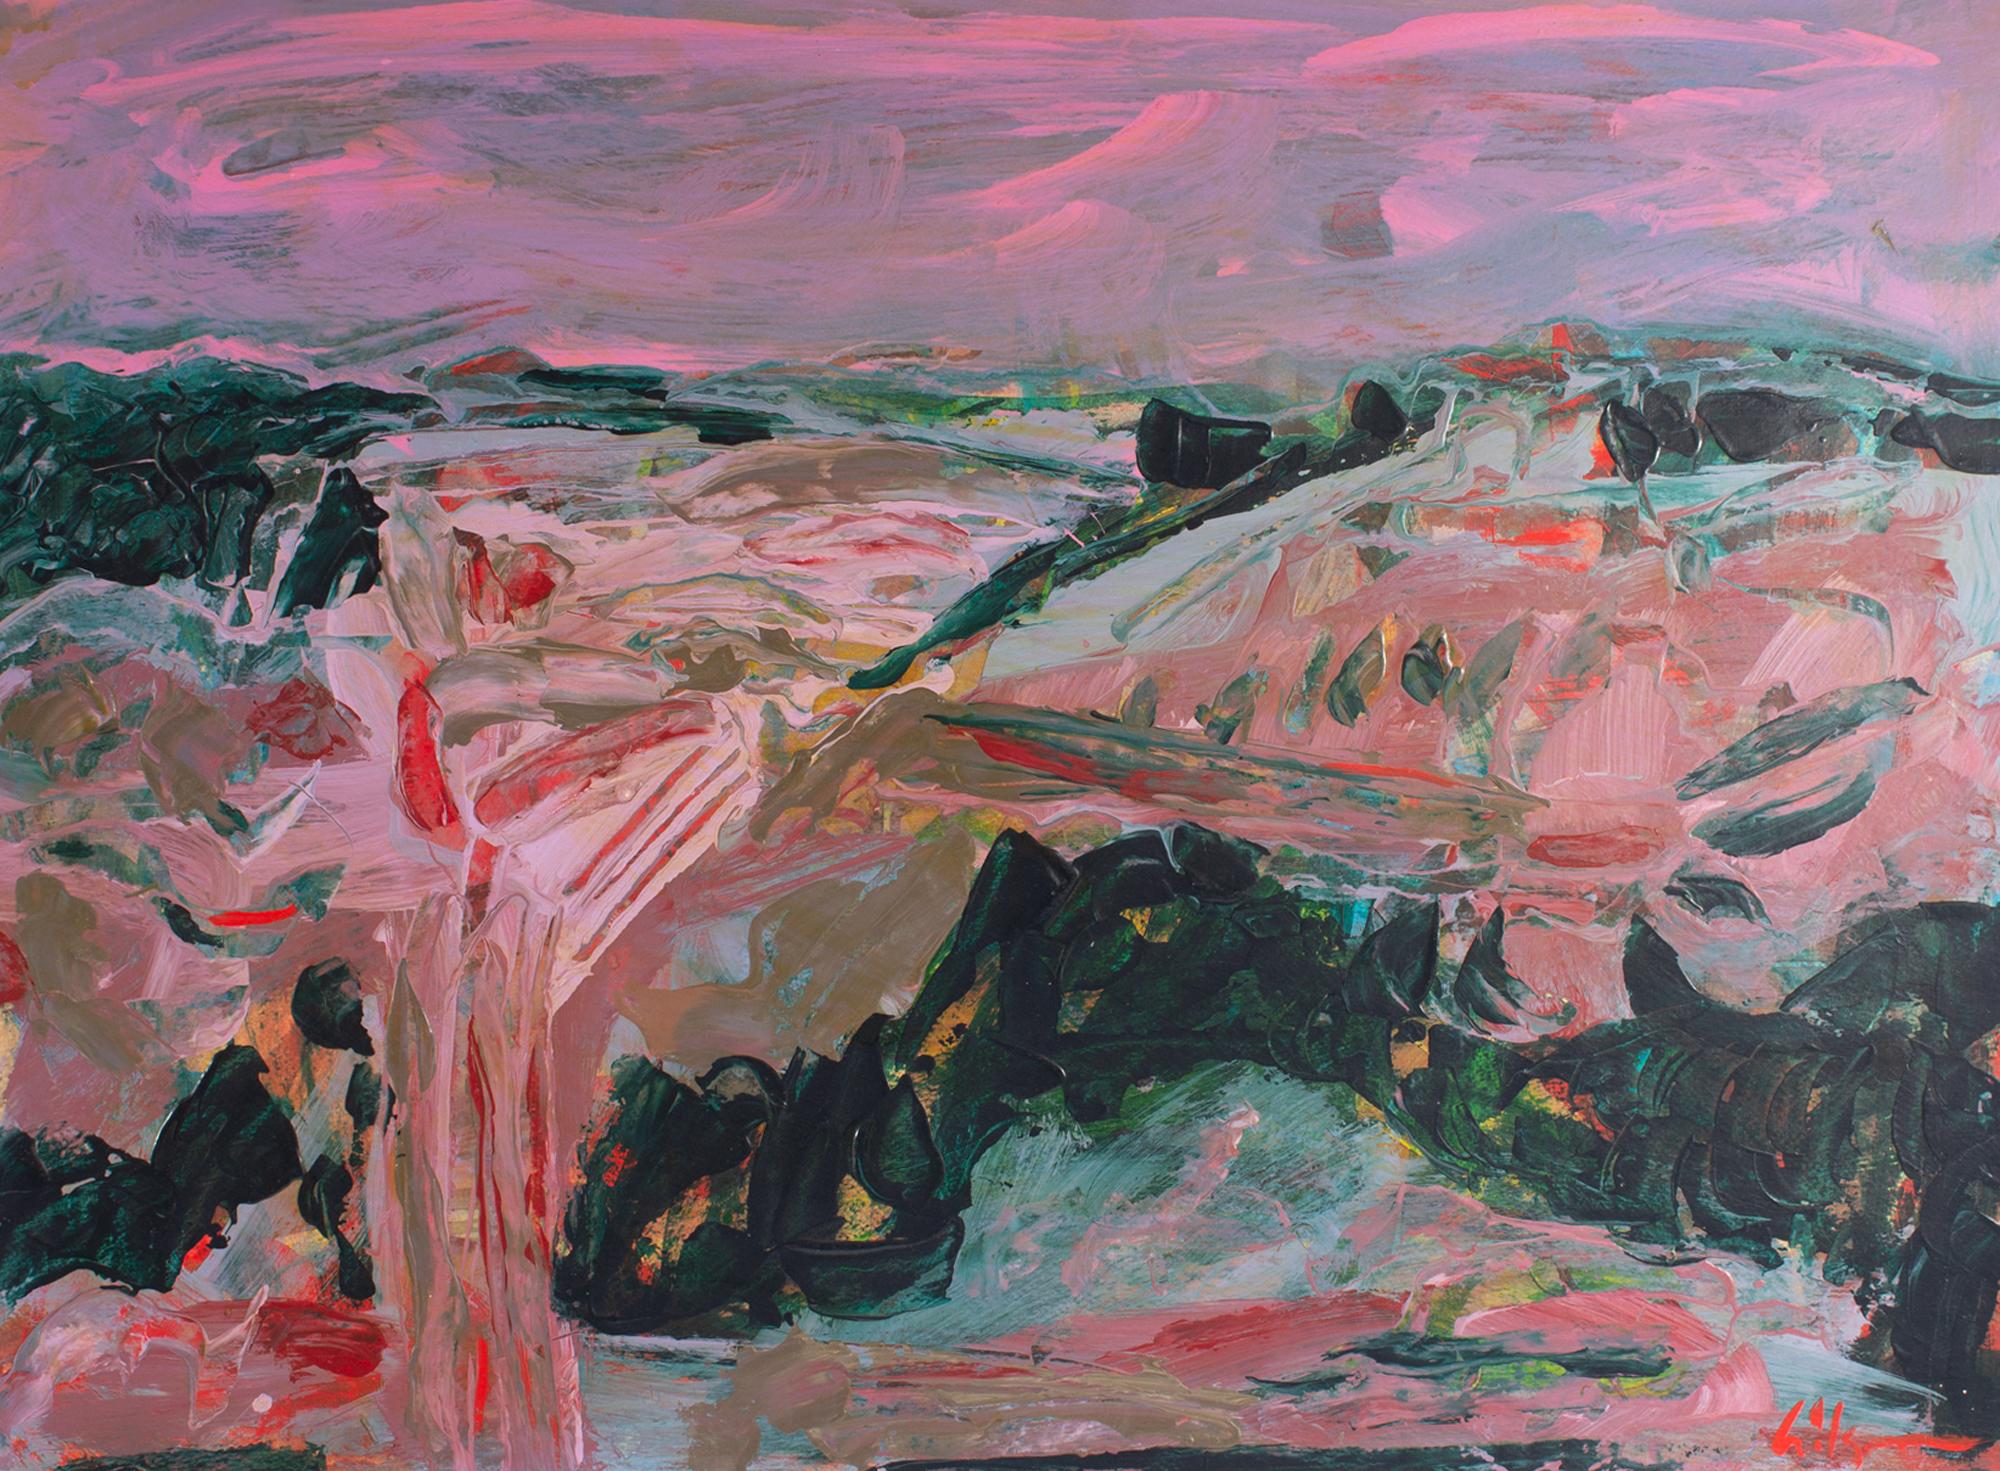 Ein Gemälde des amerikanischen Künstlers Harry Hilson (1935-2004) aus den 1980er Jahren, Acryl auf Papier. Dieses abstrakte Werk zeigt eine überwiegend rosafarbene Landschaft mit dunkelgrünen Sträuchern und Bäumen vor einem rosafarbenen Himmel. Das